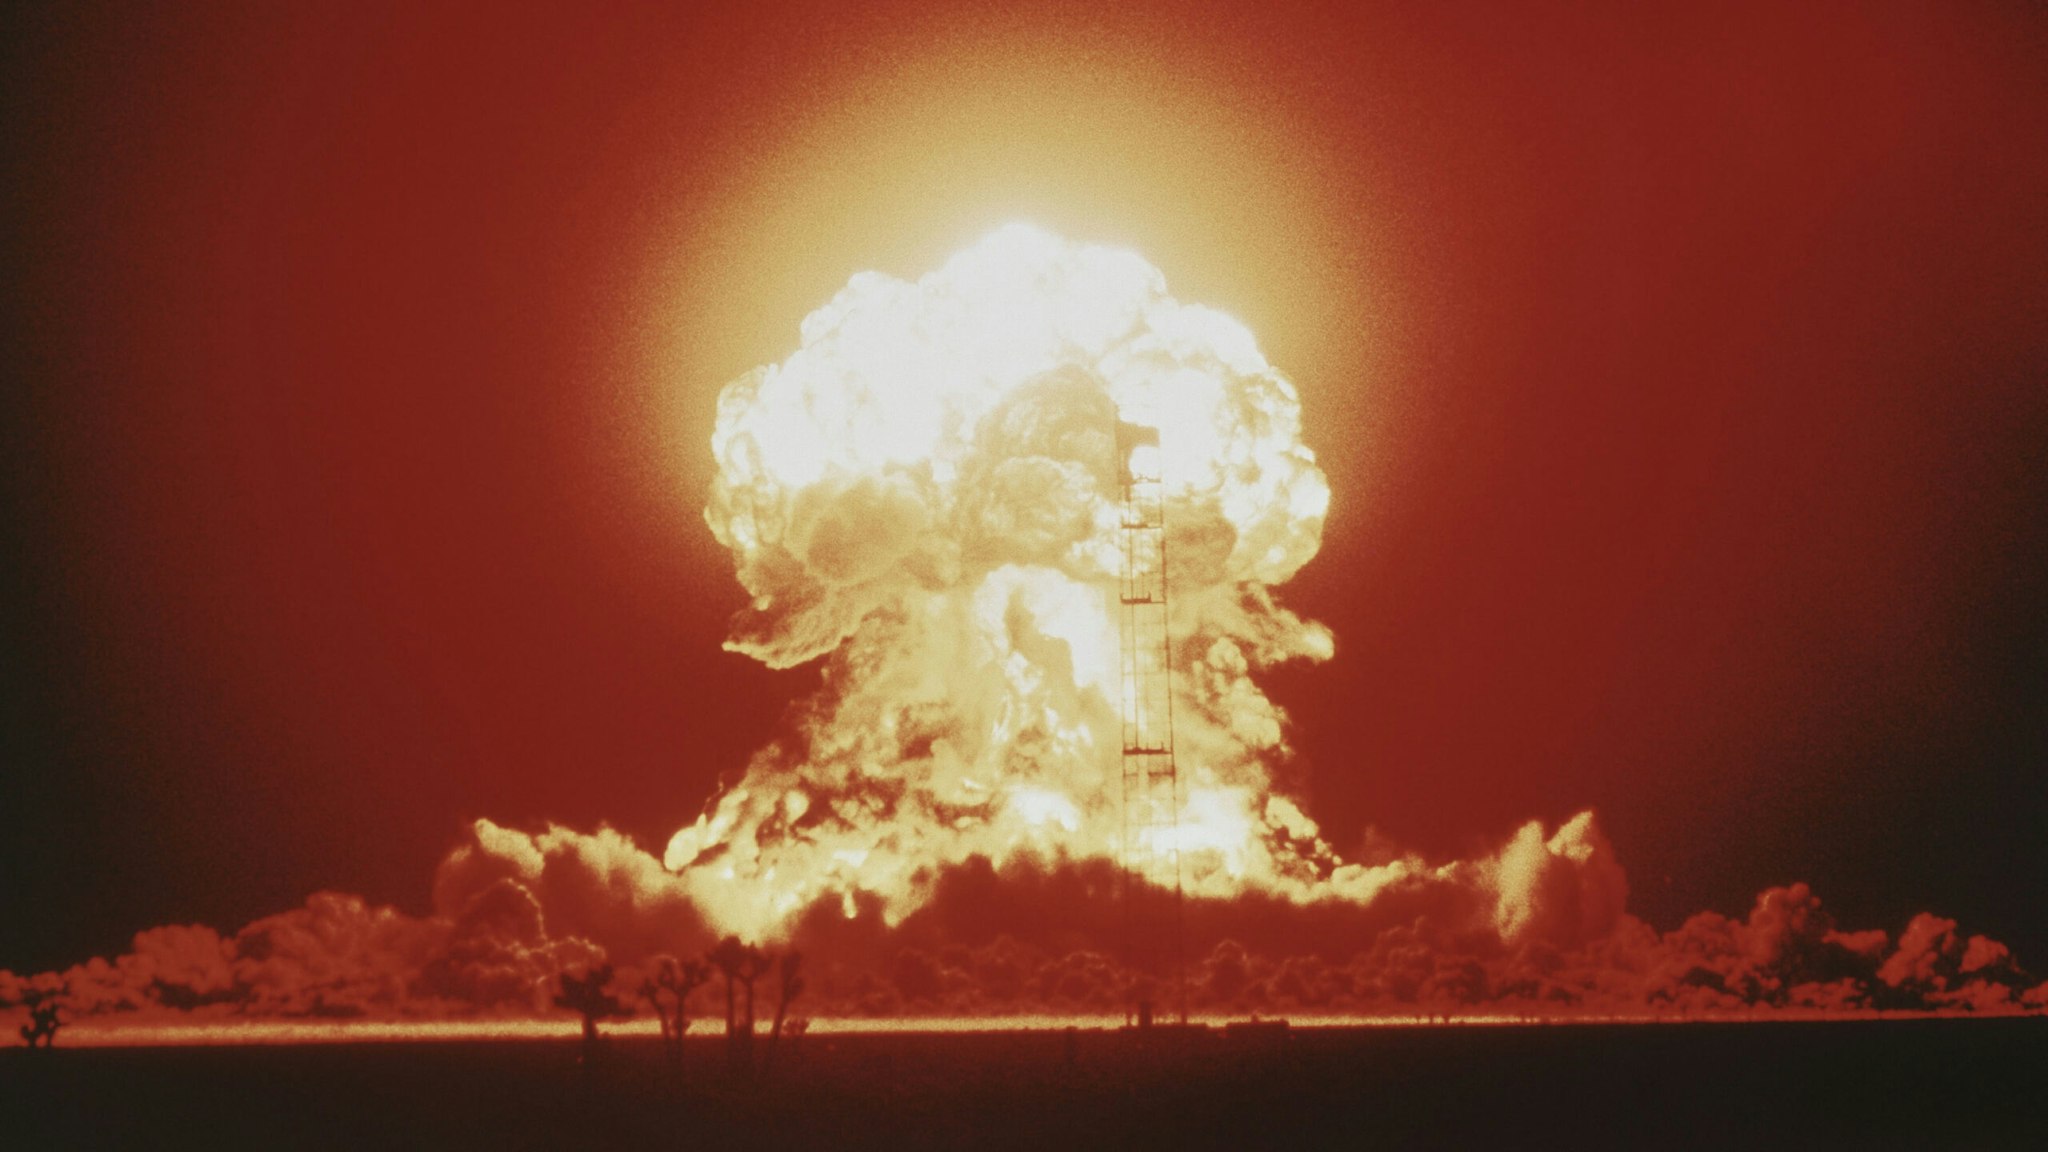 Nuclear Bomb Blast